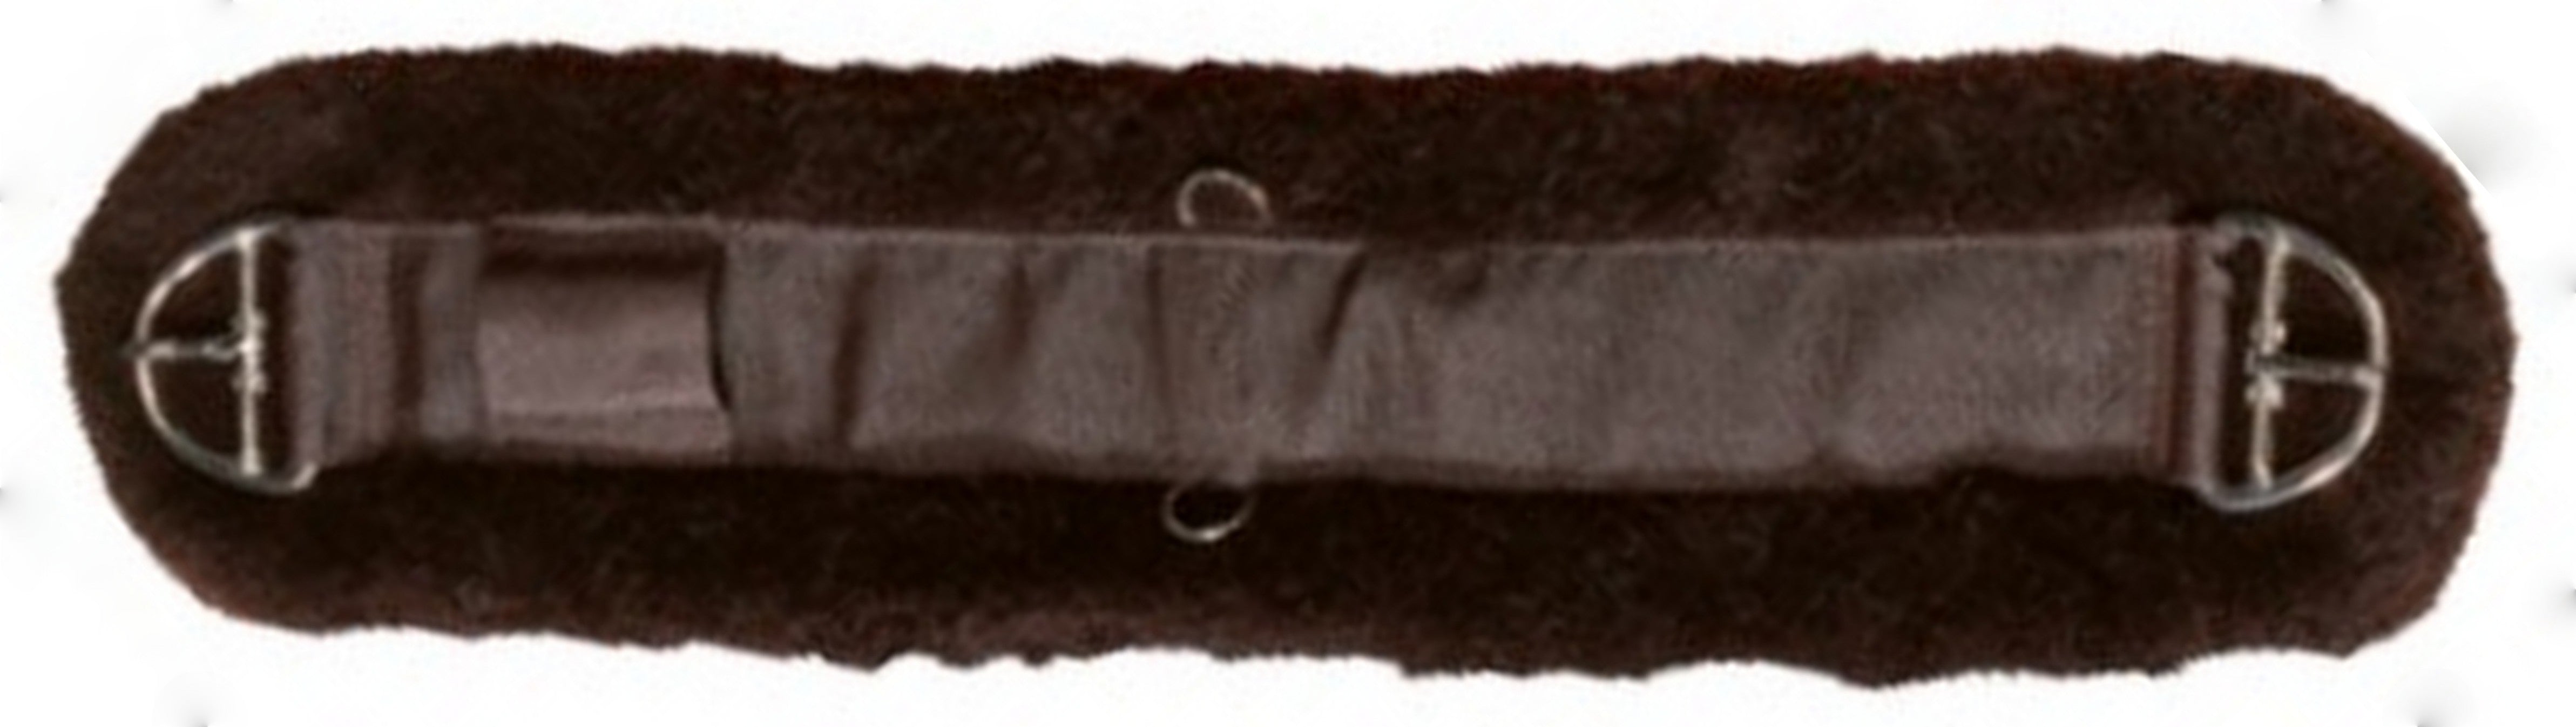 Western fleece waist belt on sale